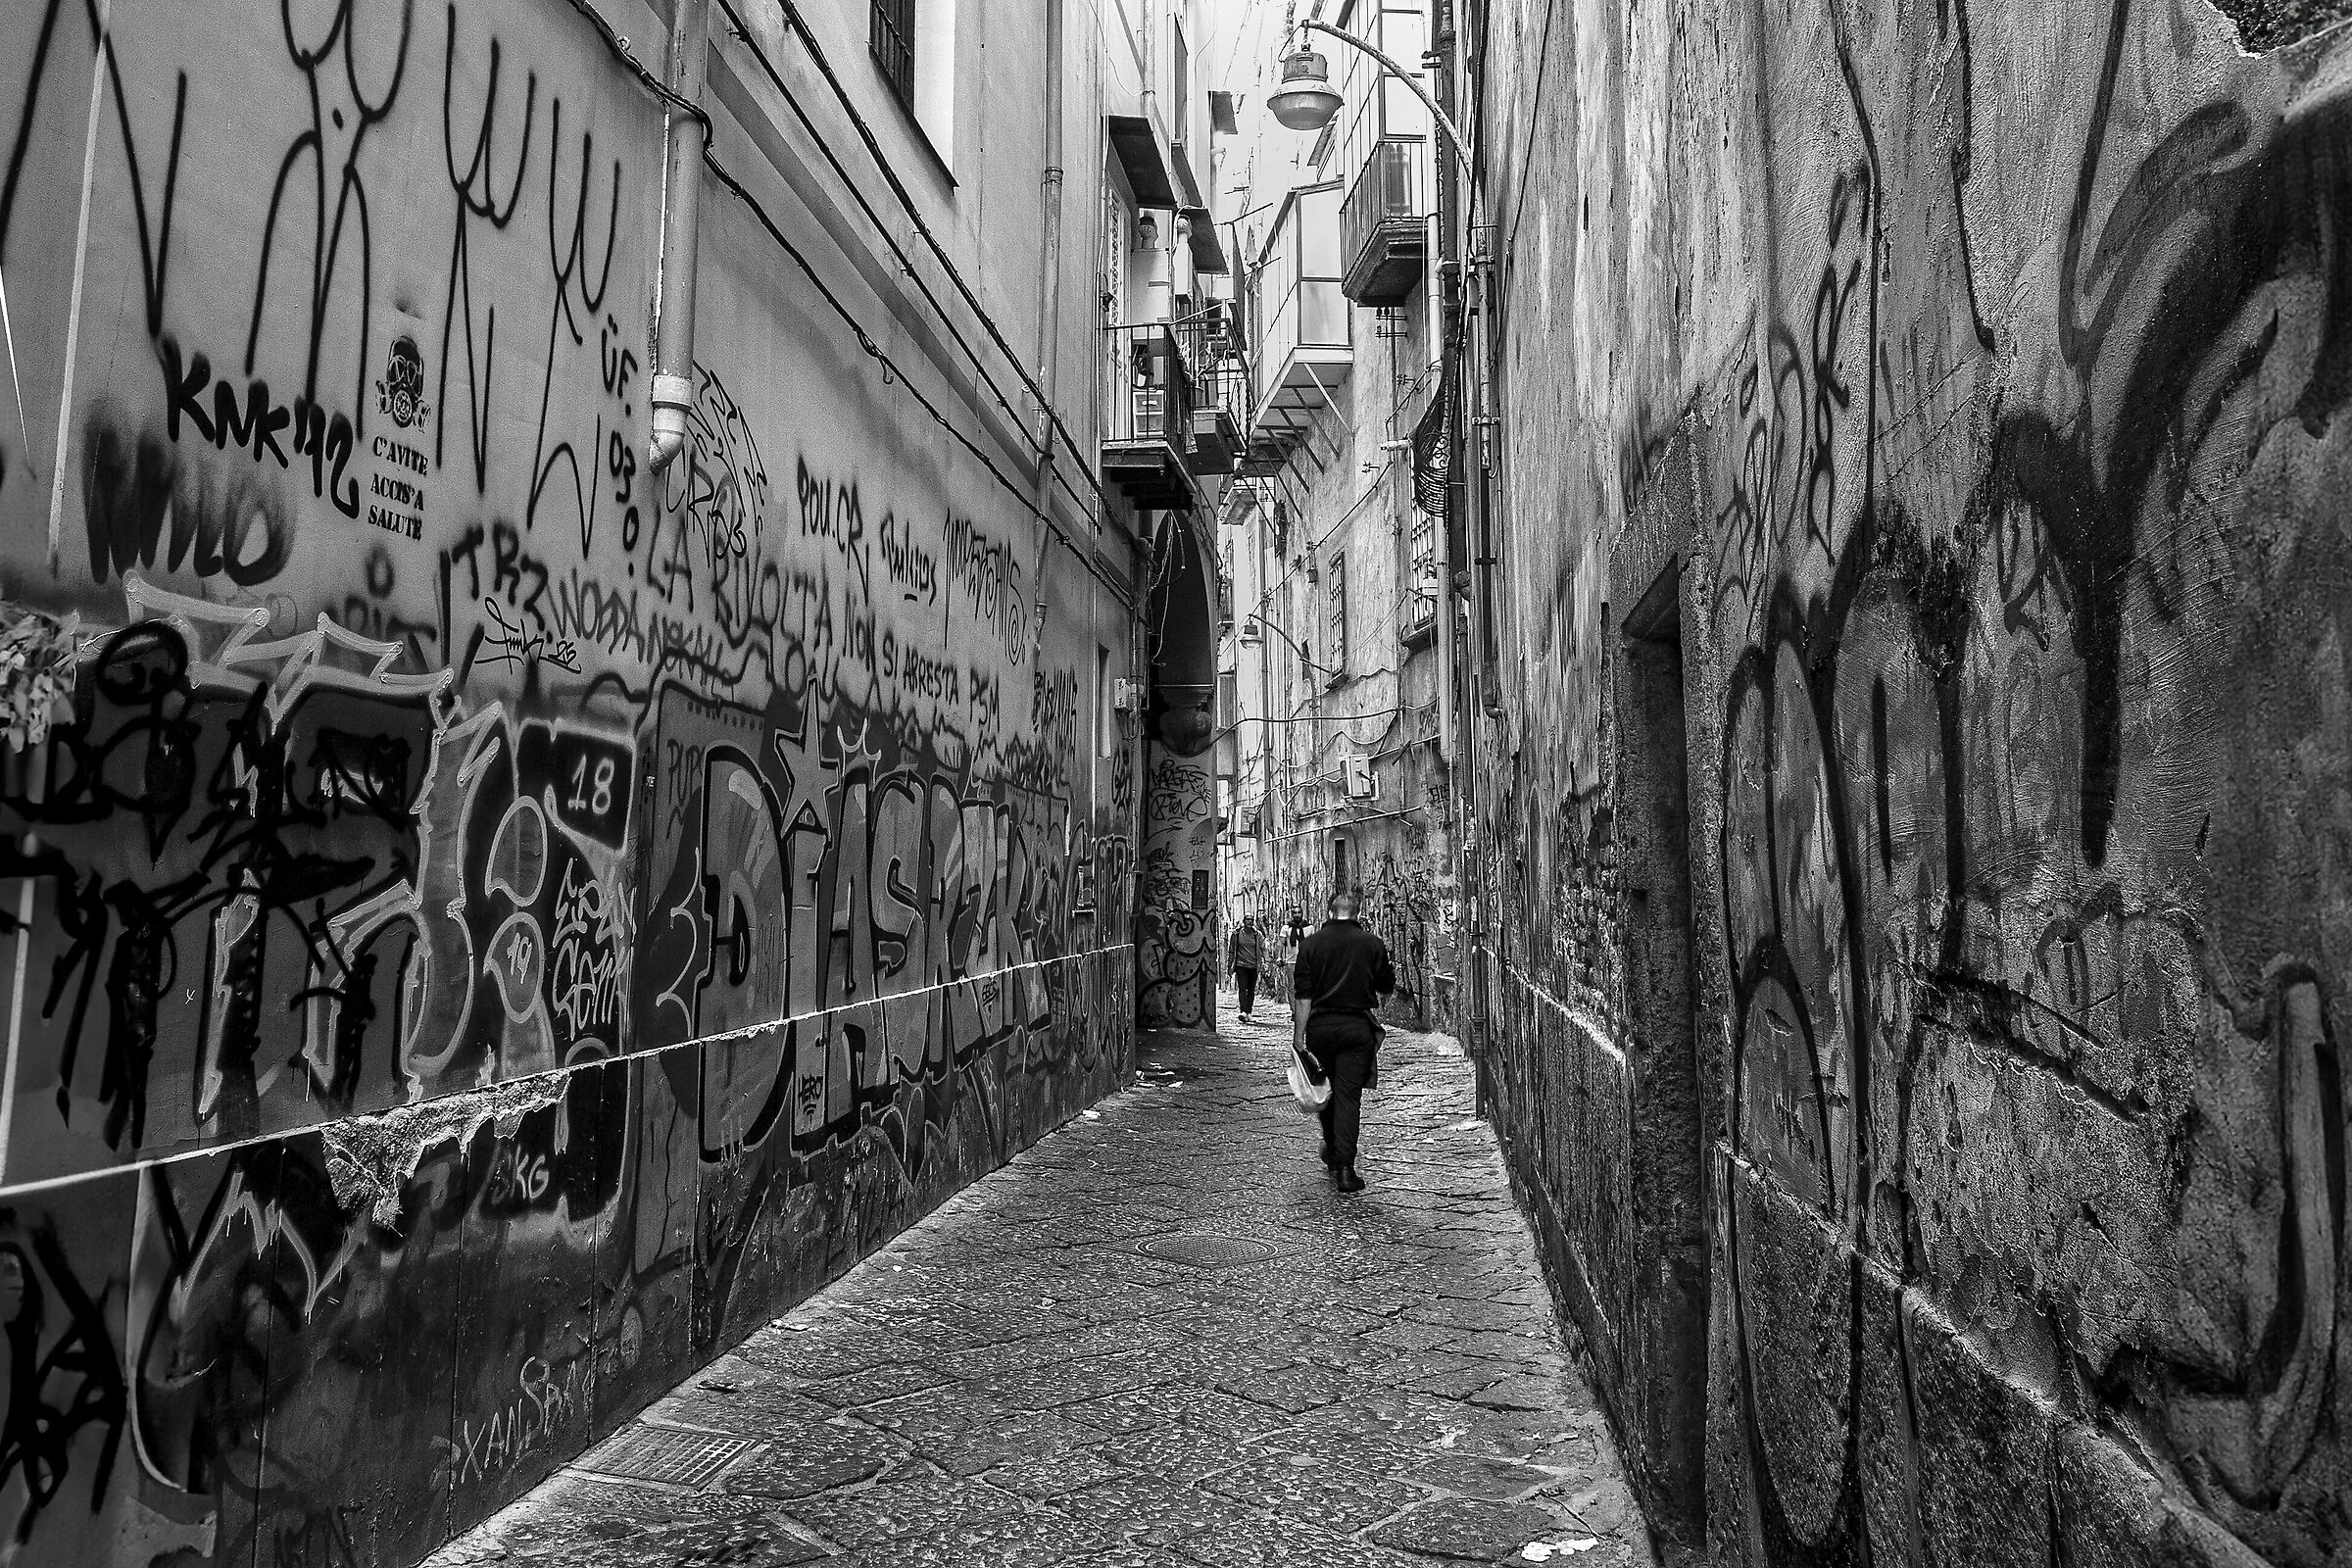 Street in una strada strett', strett' - Napoli...